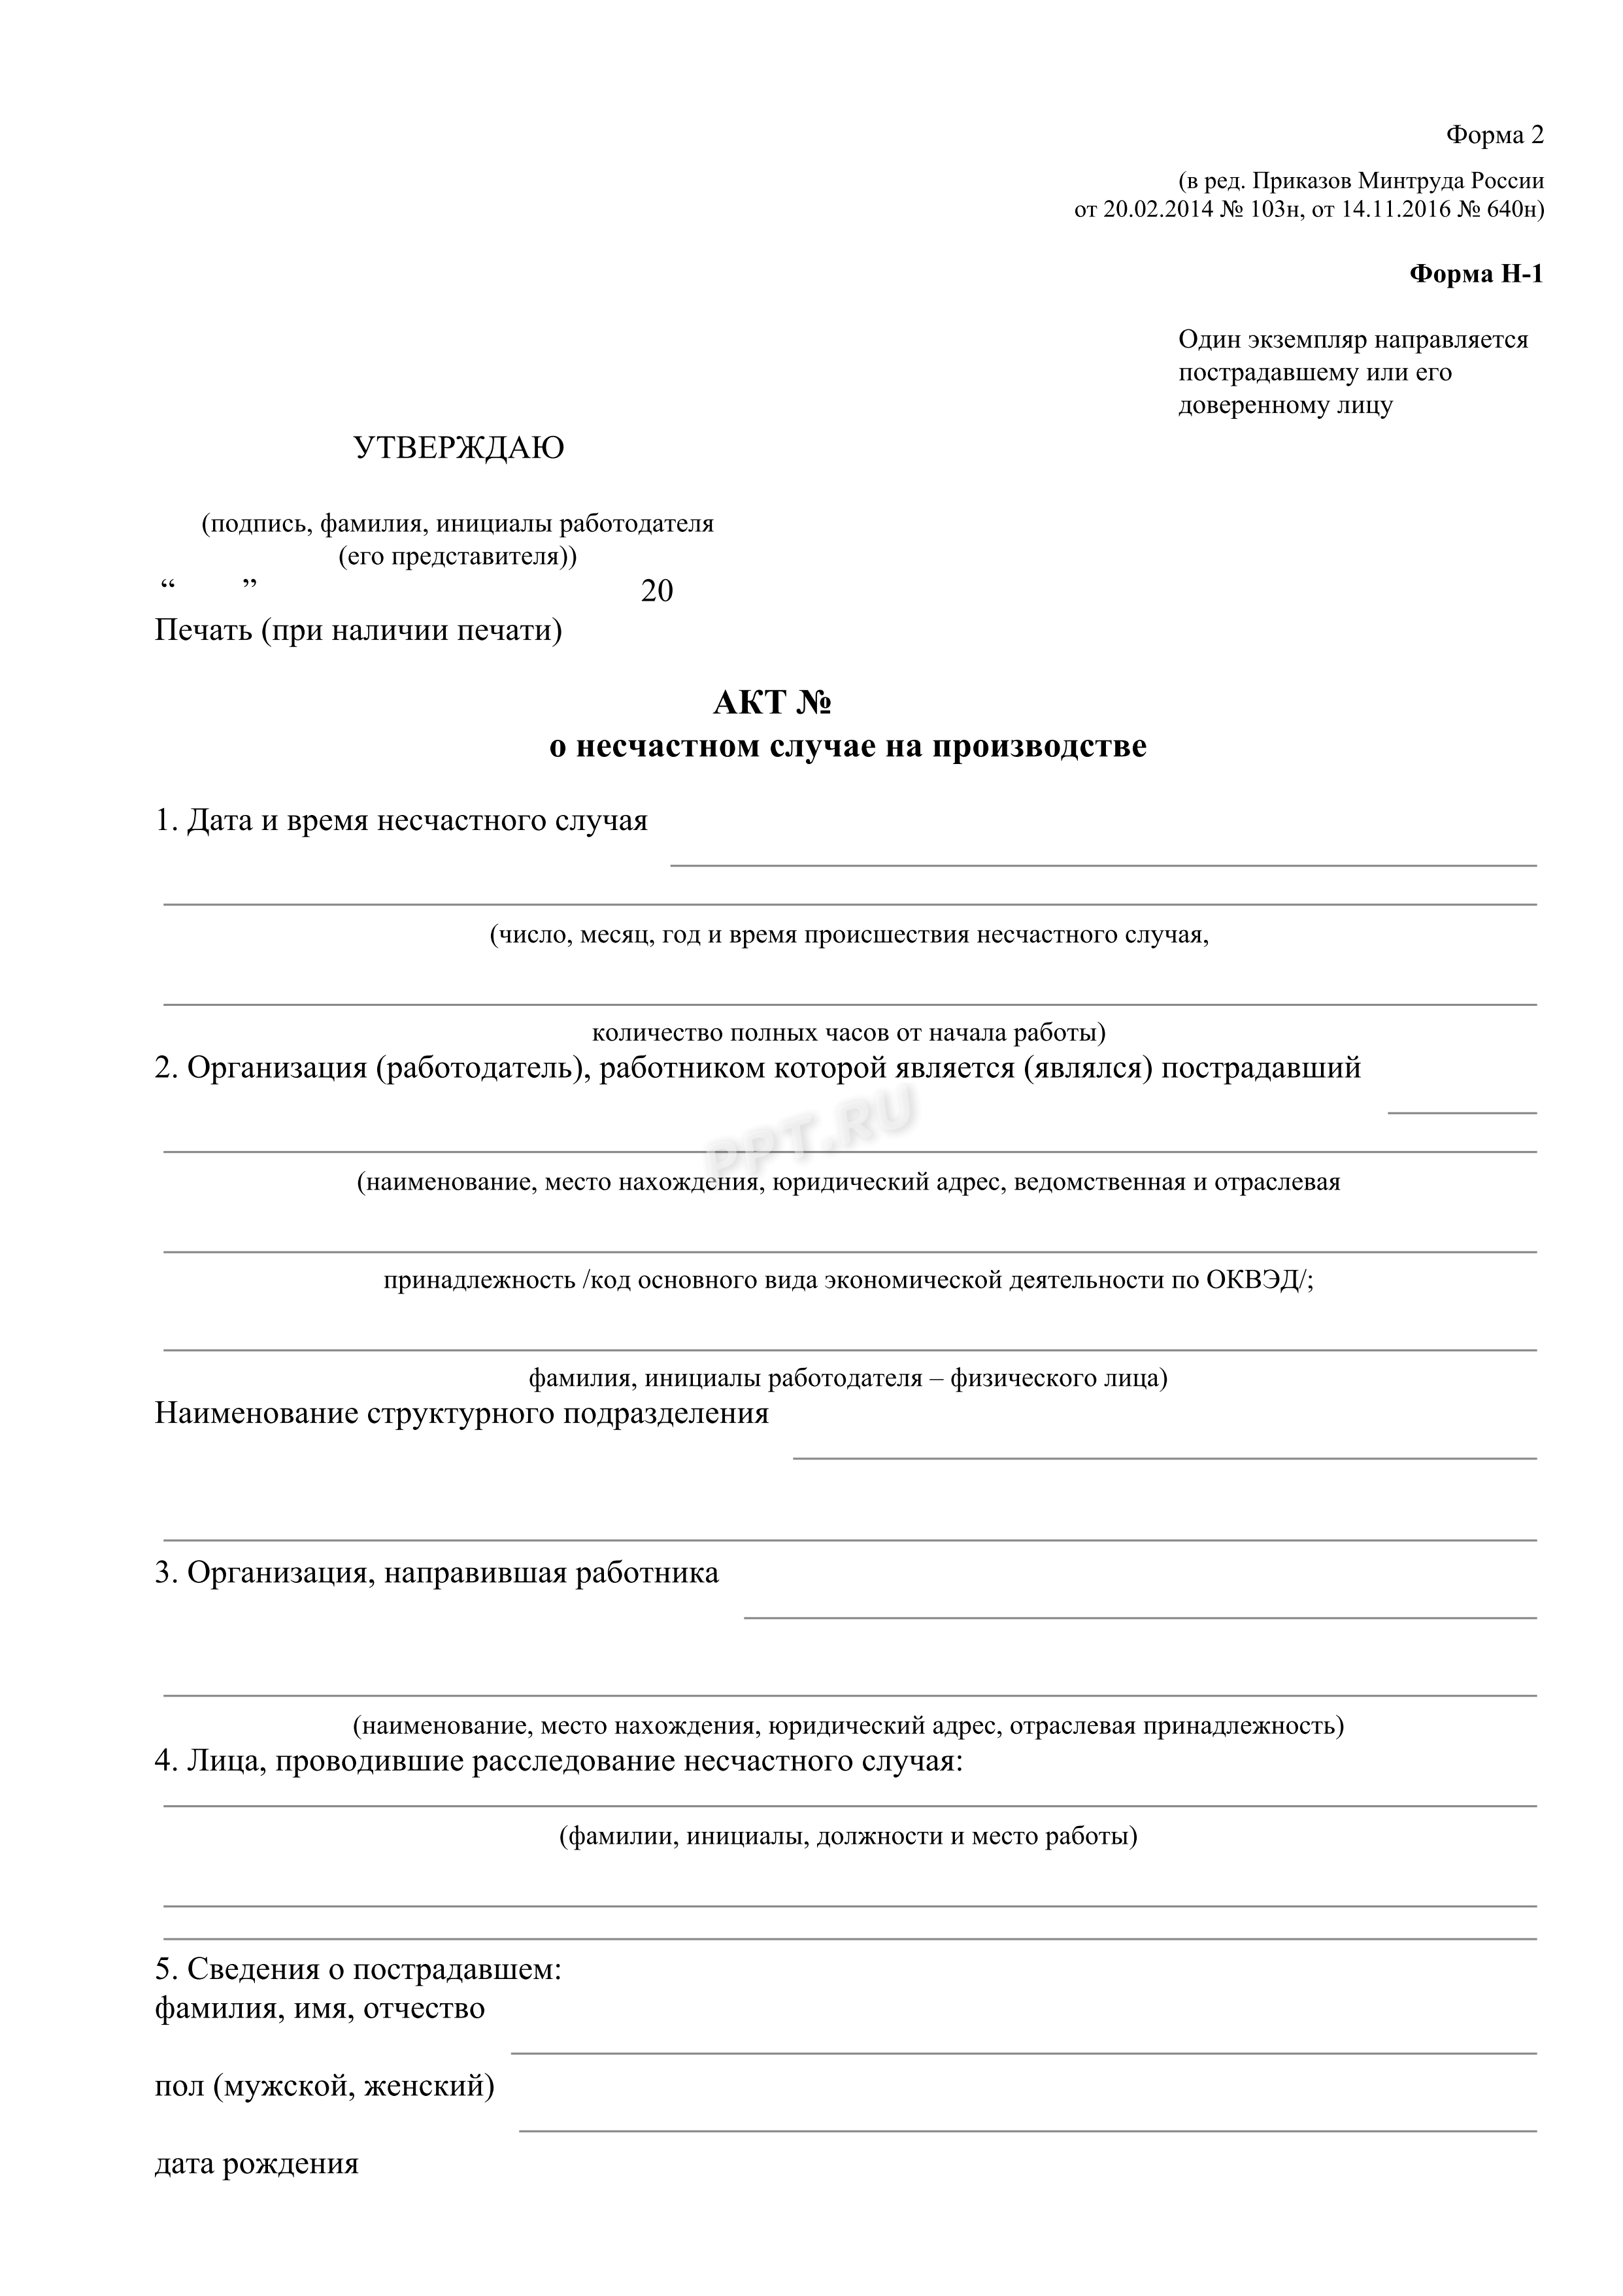 Регистрация договора купли продажи квартиры в москве